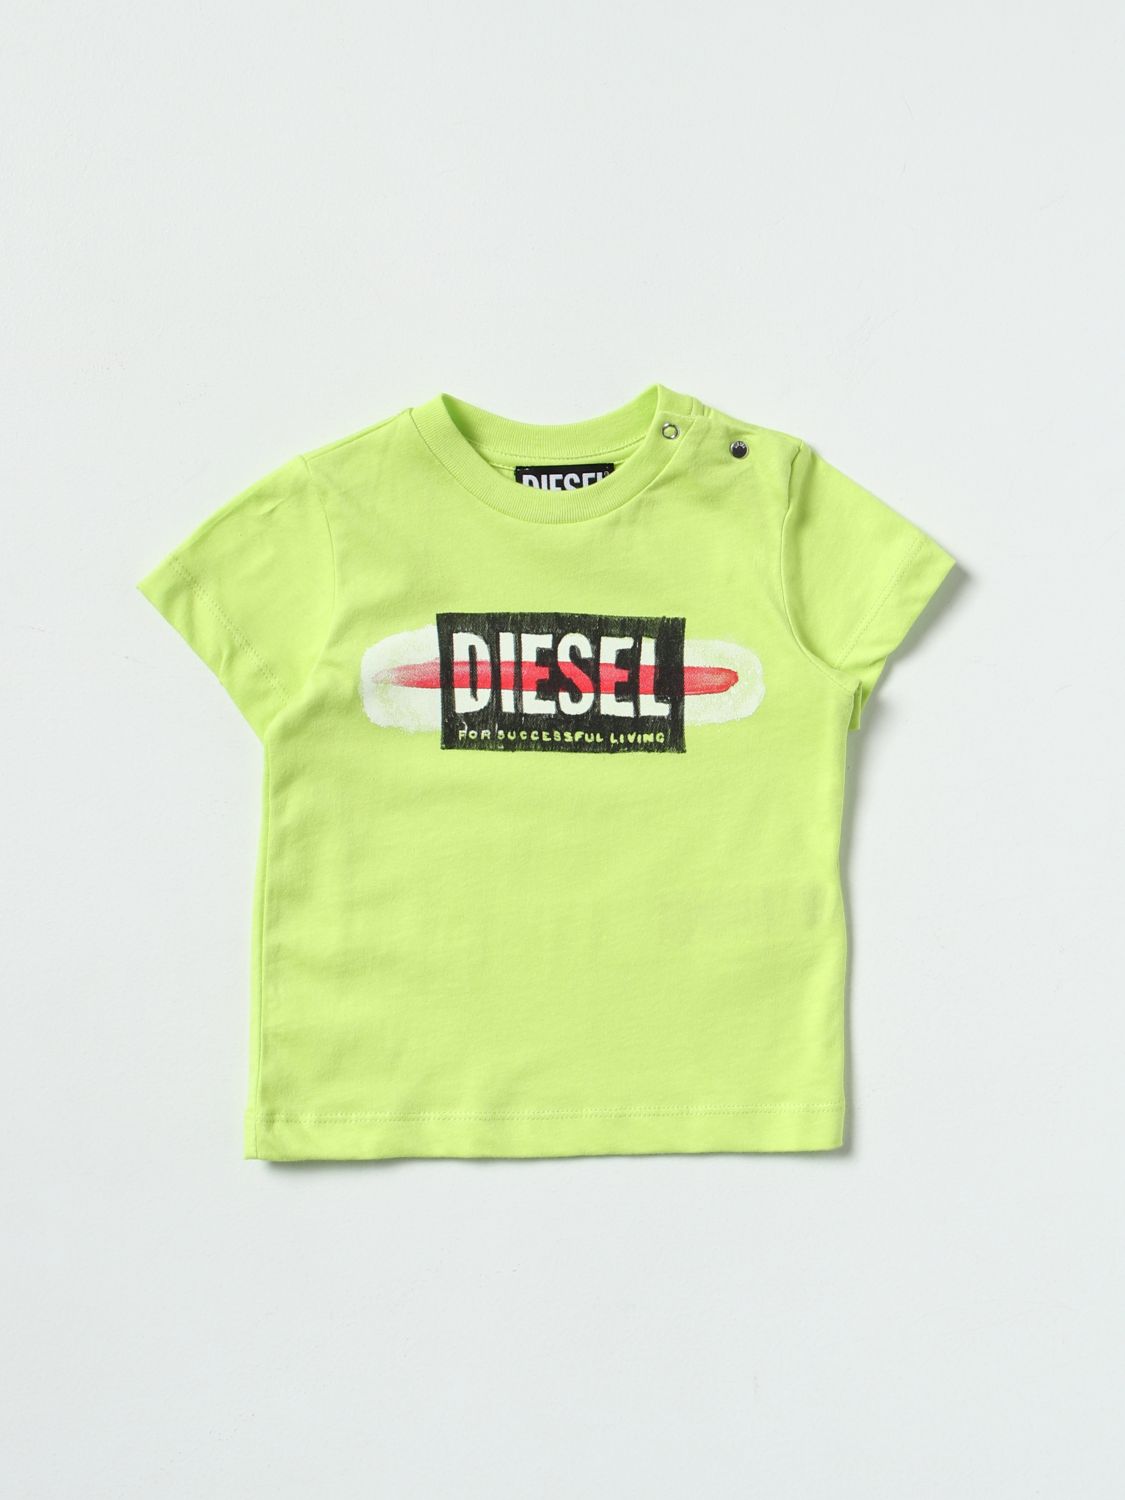 Diesel Diesel logo T-shirt